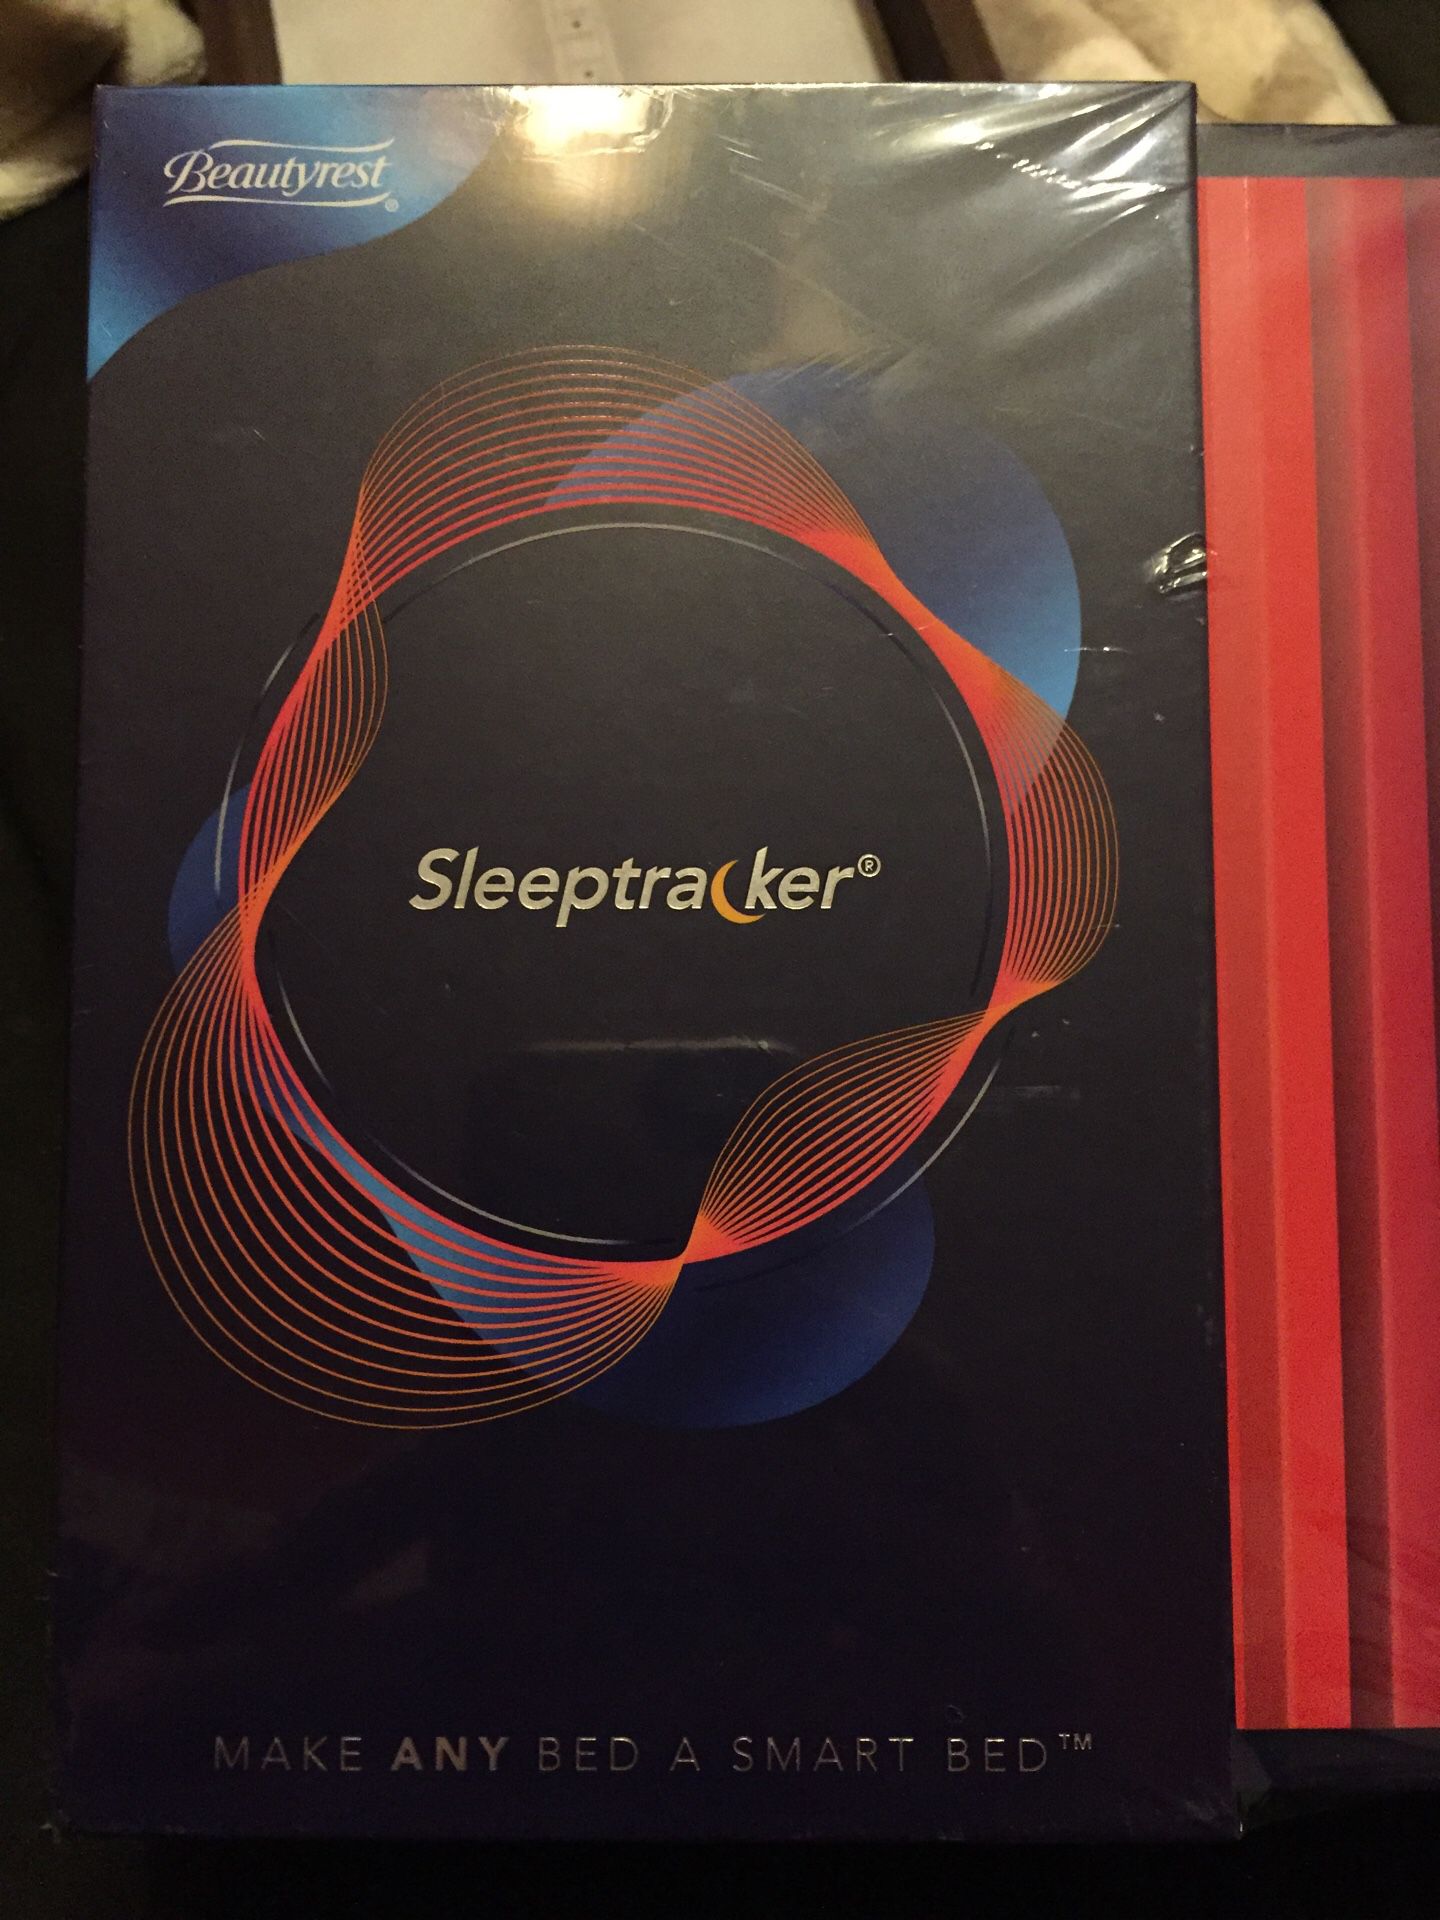 Sleeptracker by beauty rest new in box